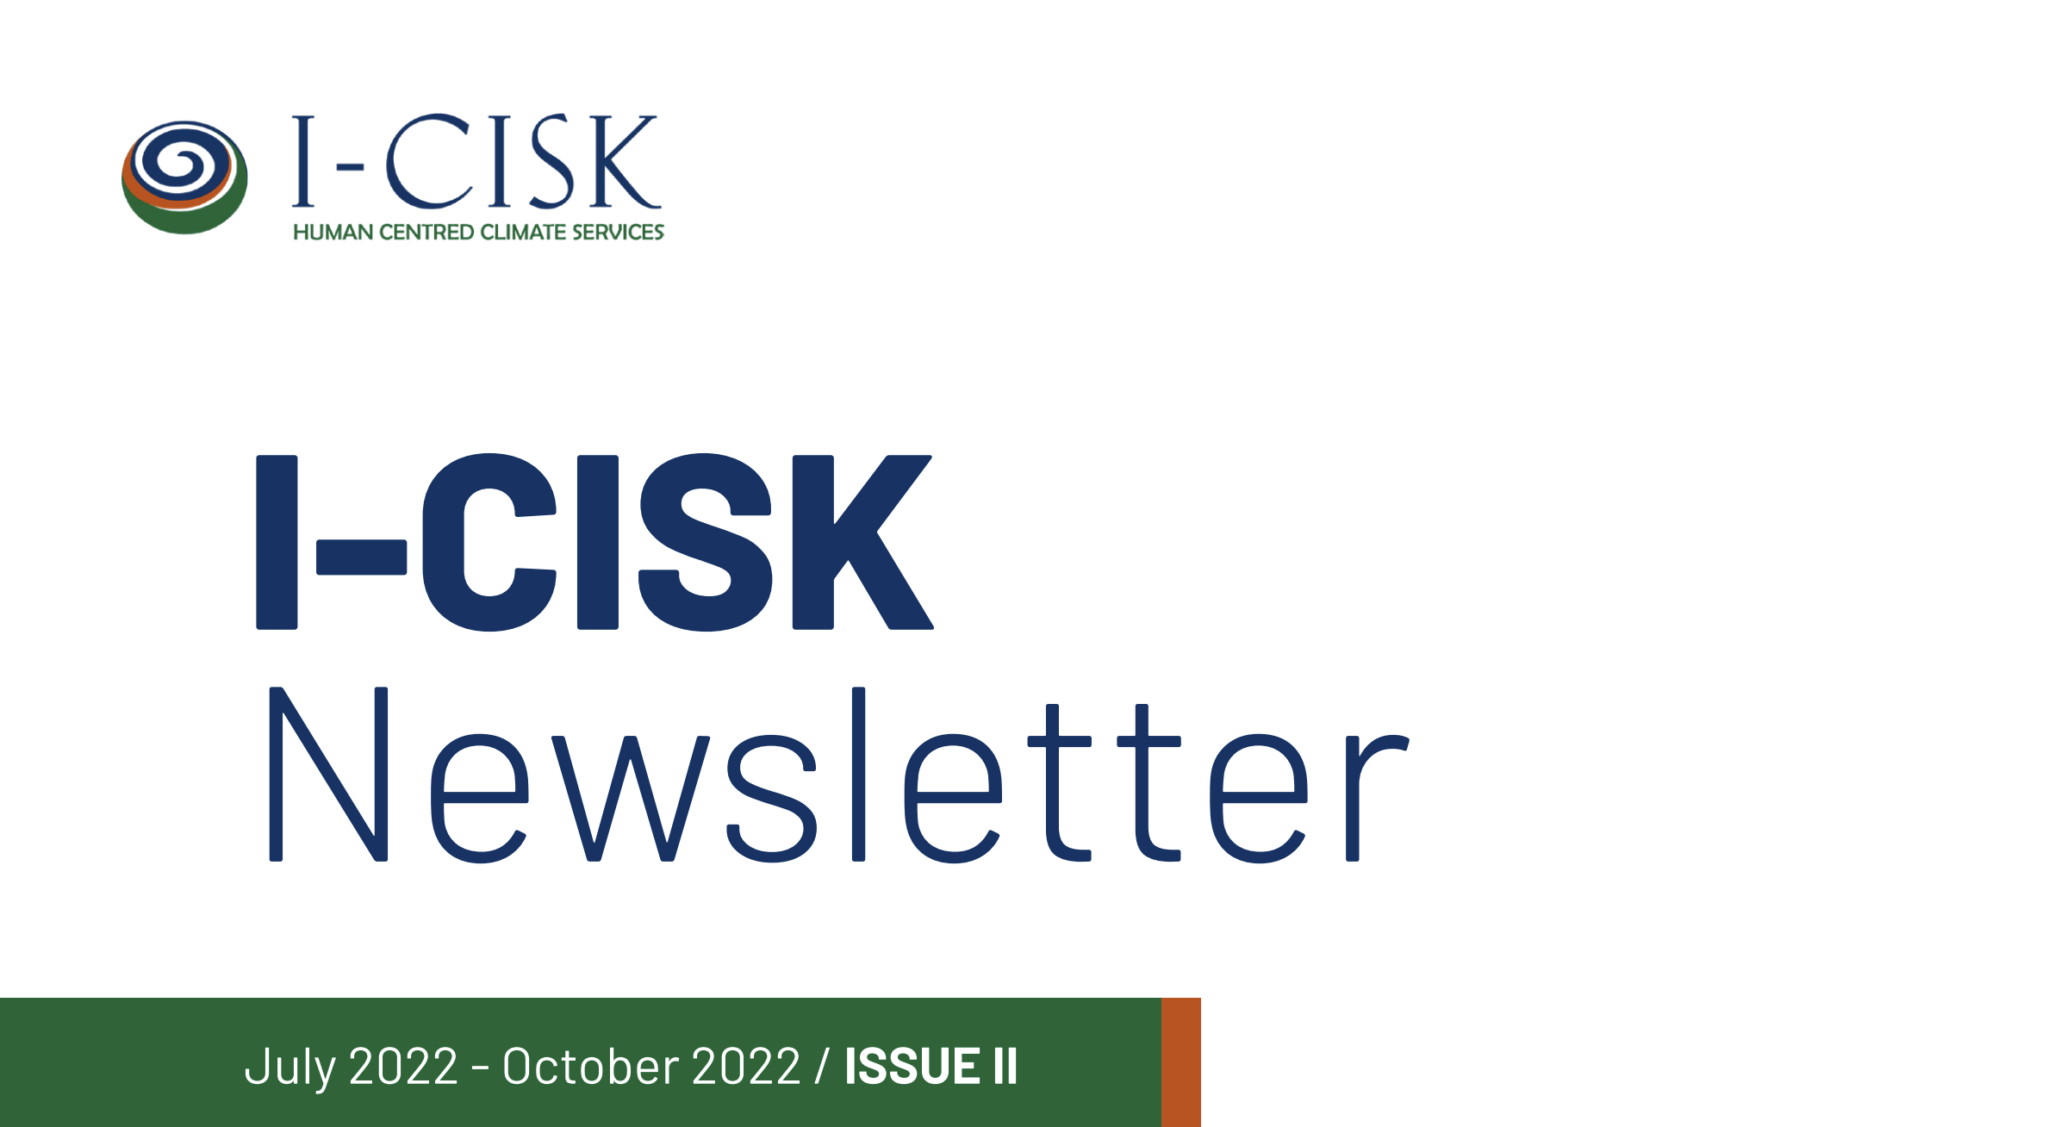 I-CISK Newsletter Issue 2